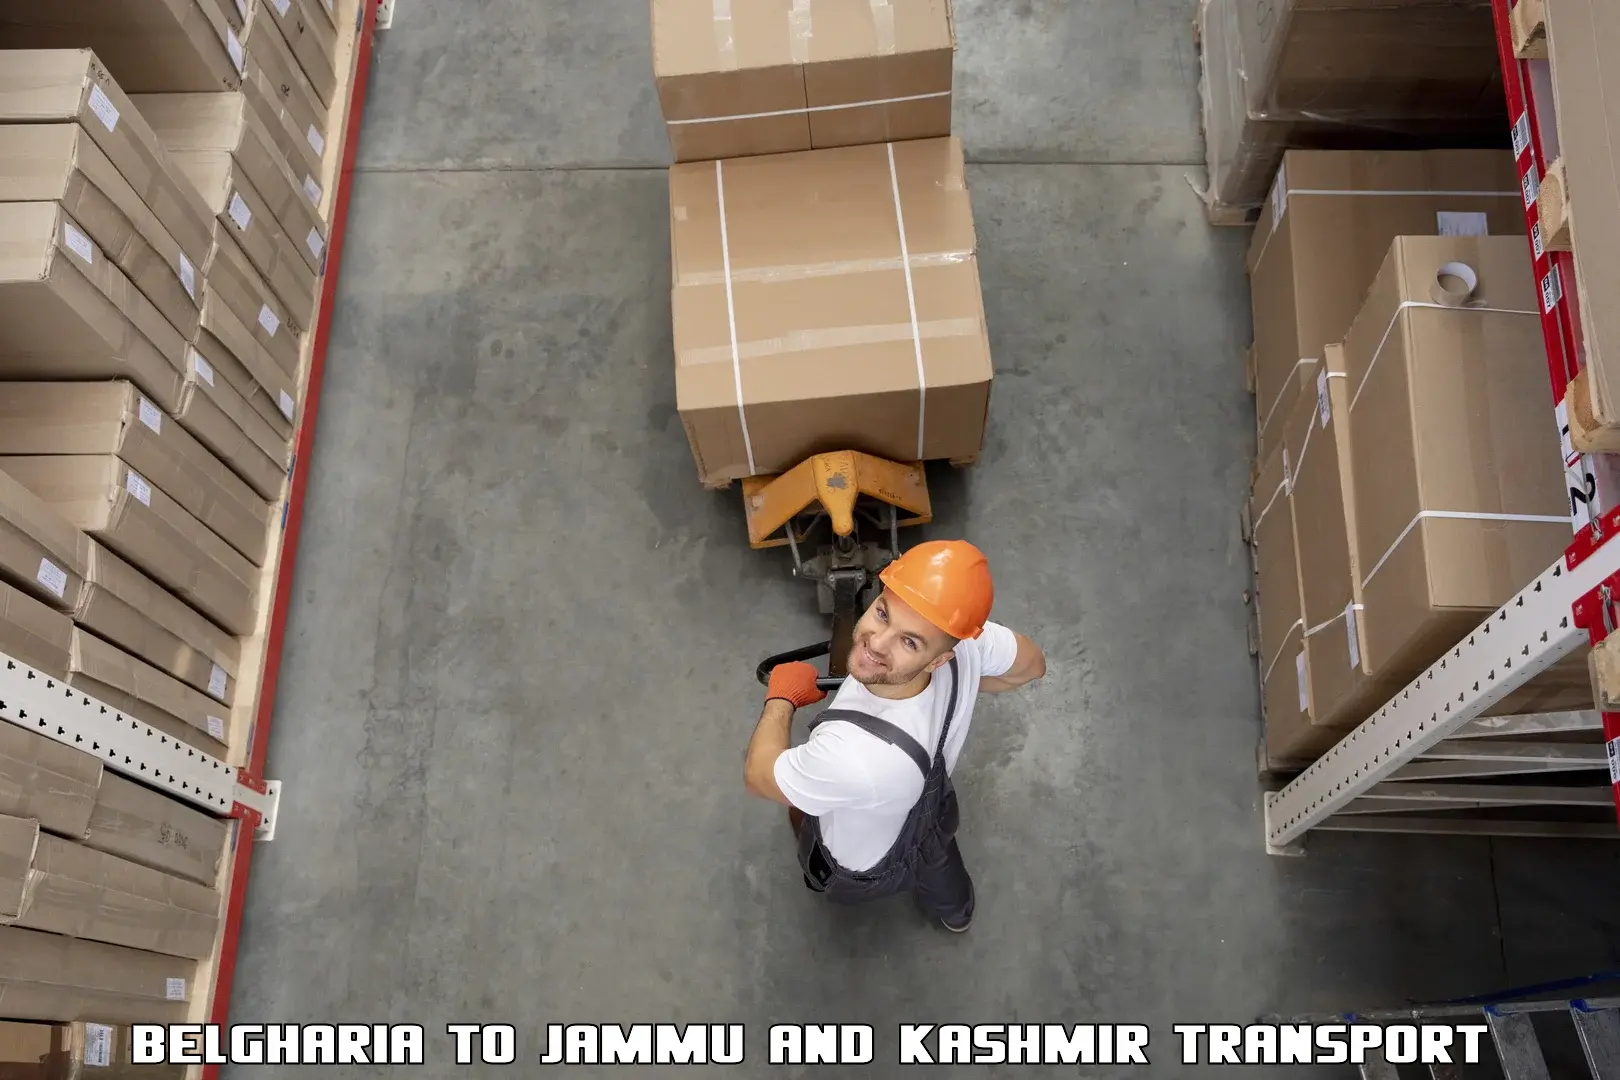 Parcel transport services Belgharia to Srinagar Kashmir